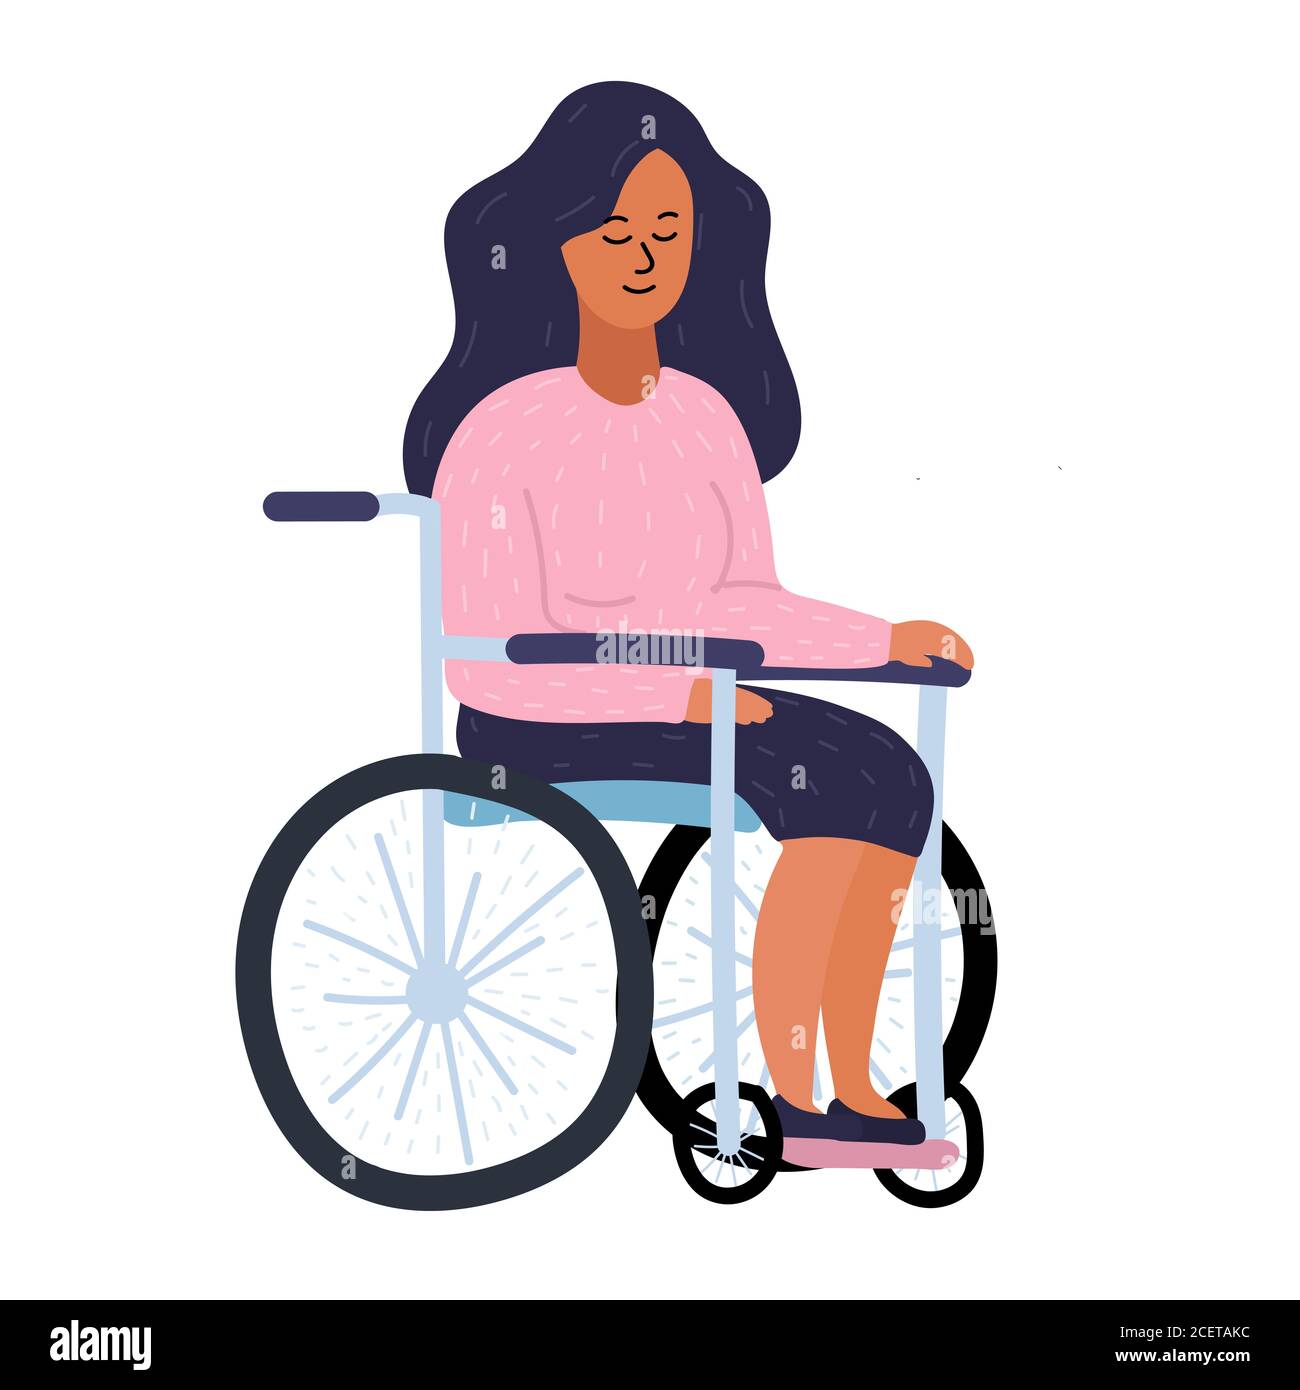 La jeune femme est sur une chaise roulante, un handicap et une  responsabilité sociale. Fille avec cheveux noirs et chandail rose.  Illustration vectorielle de dessin animé isolée activée Photo Stock - Alamy